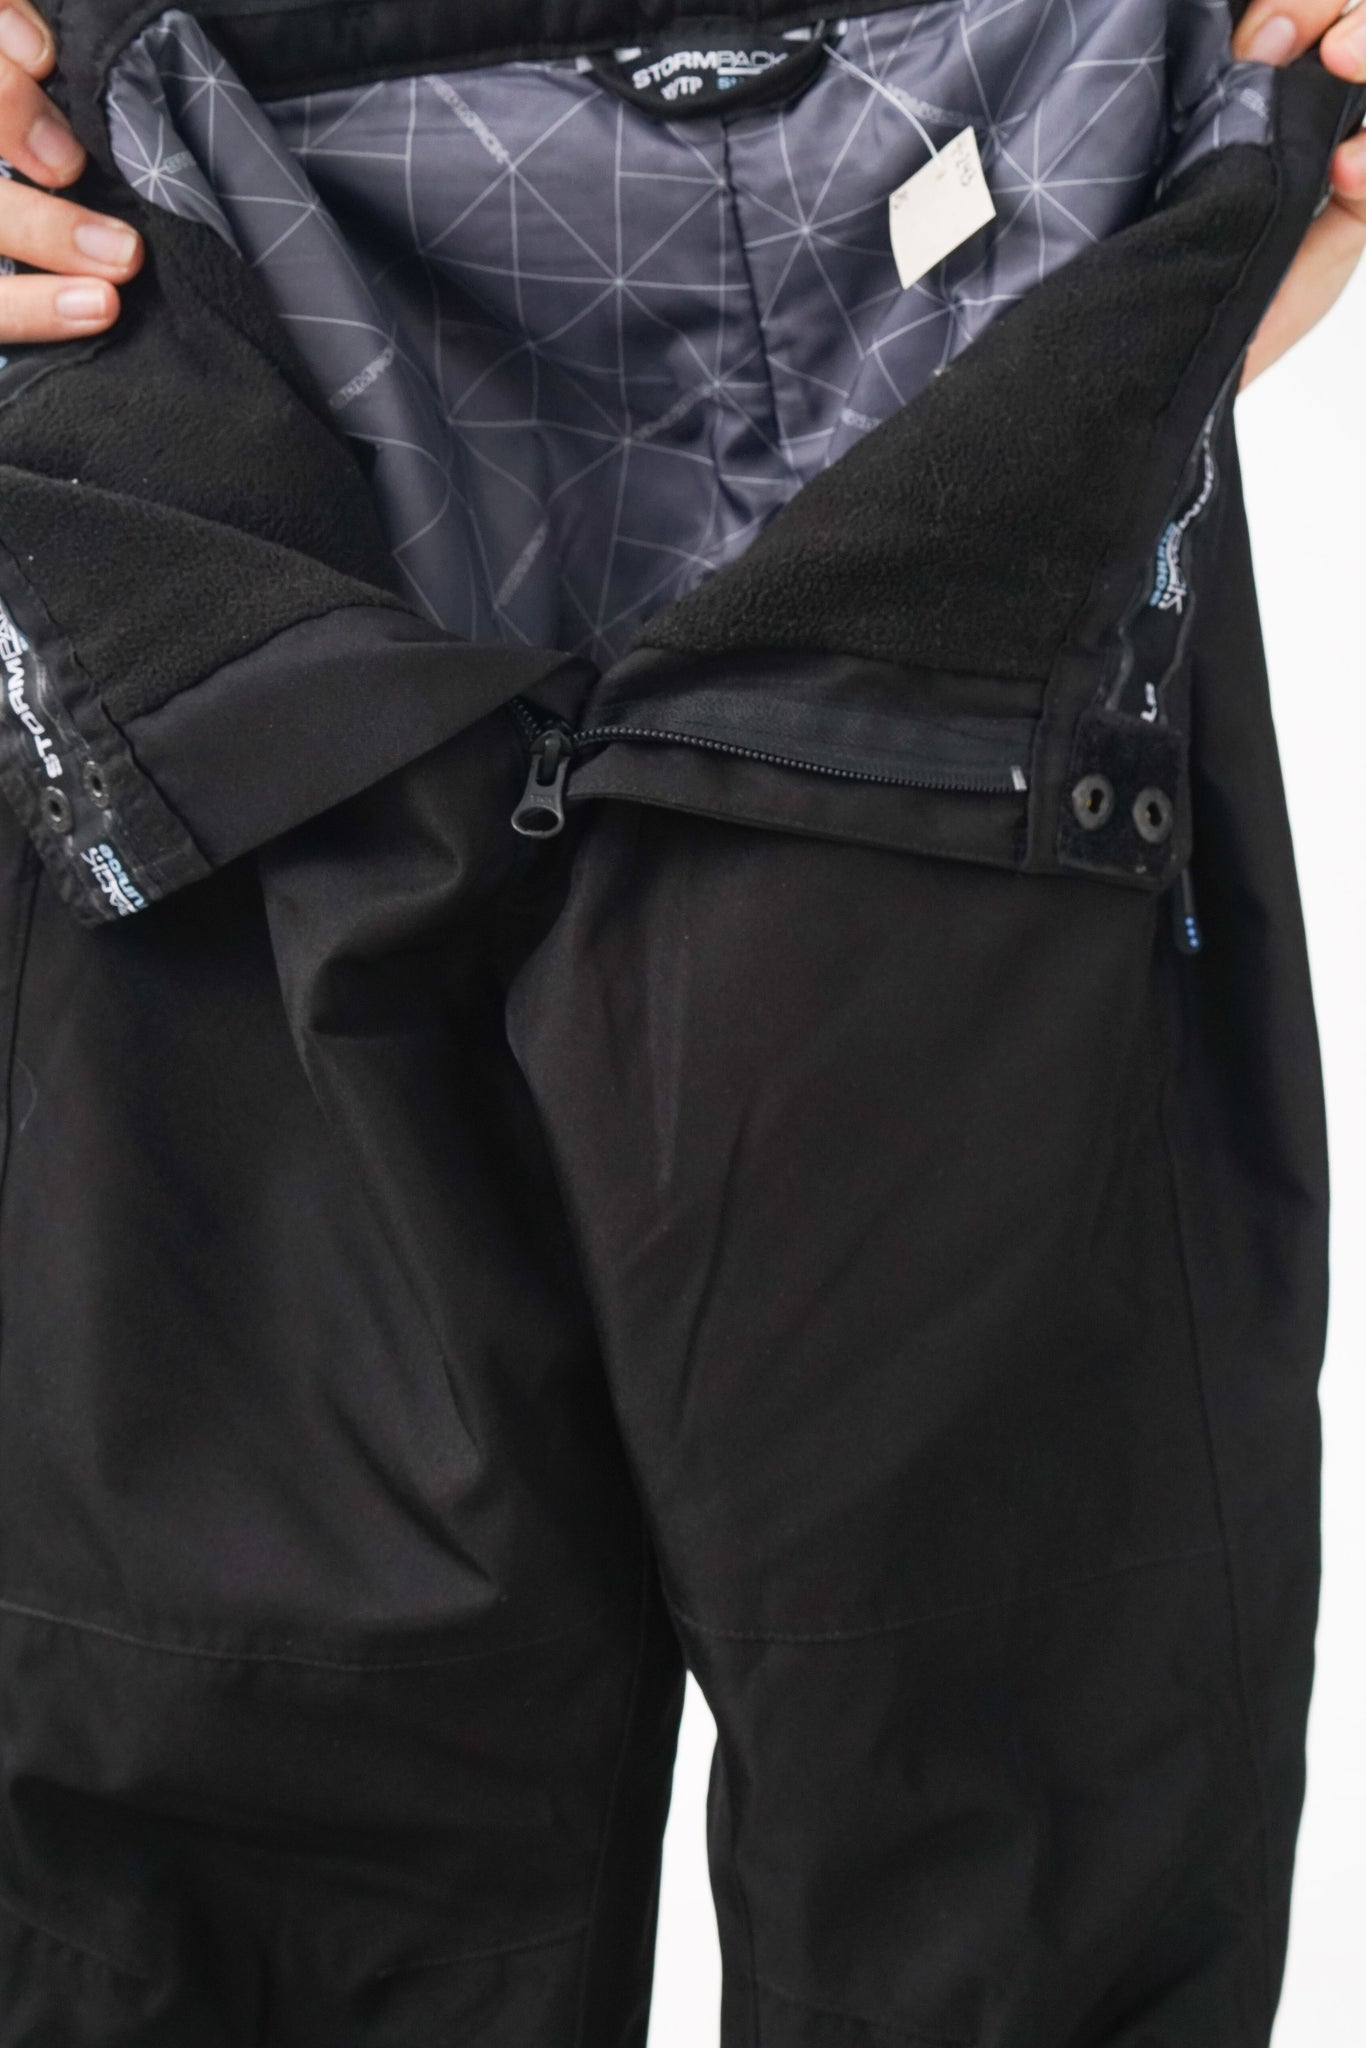 Pantalon de neige ajusté Stormpack pour femme taille XS – Ribotti Vintage